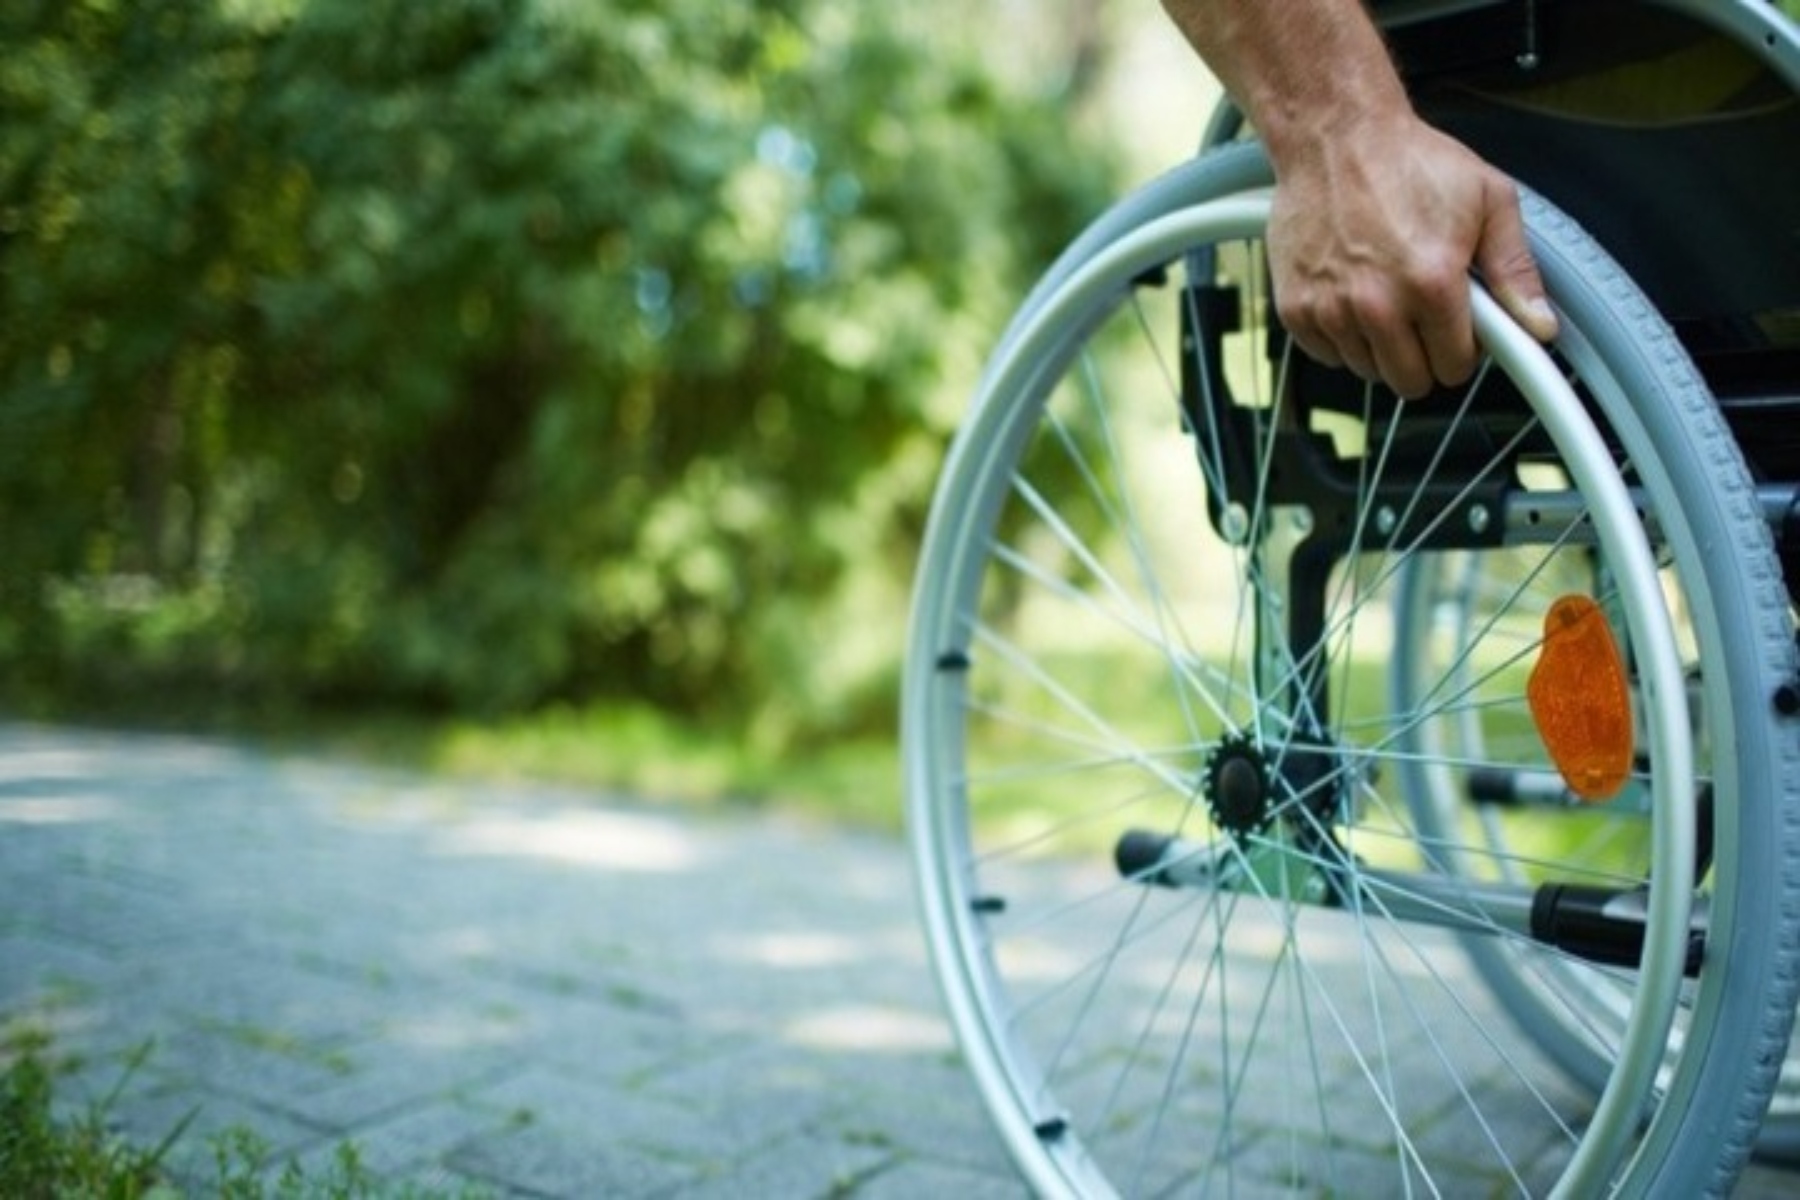 ΕΣΑμεΑ: Να αυξηθεί το εξωιδρυματικό σε όλα τα άτομα με αναπηρία χωρίς διακρίσεις!